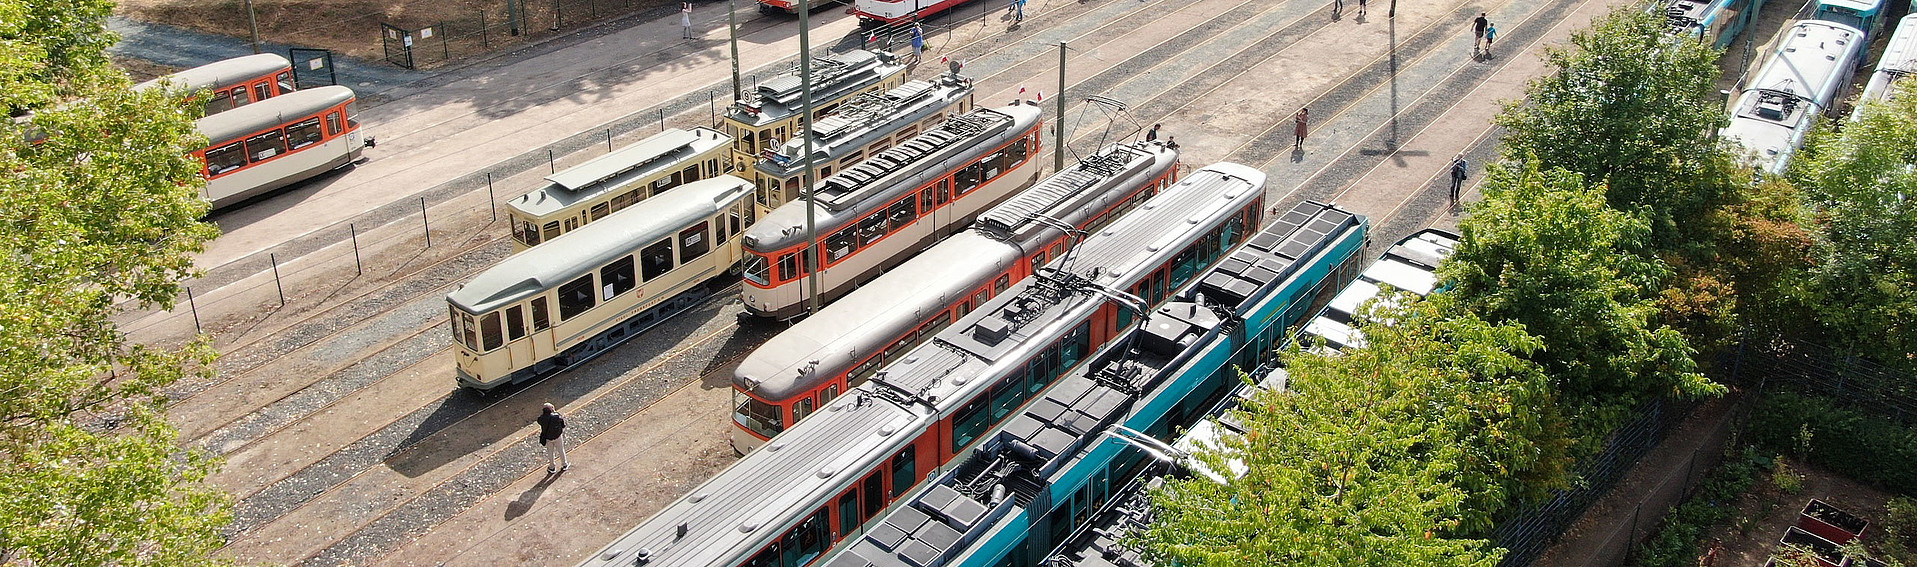 VGF-Fahrzeuge auf dem VGF-Gelände